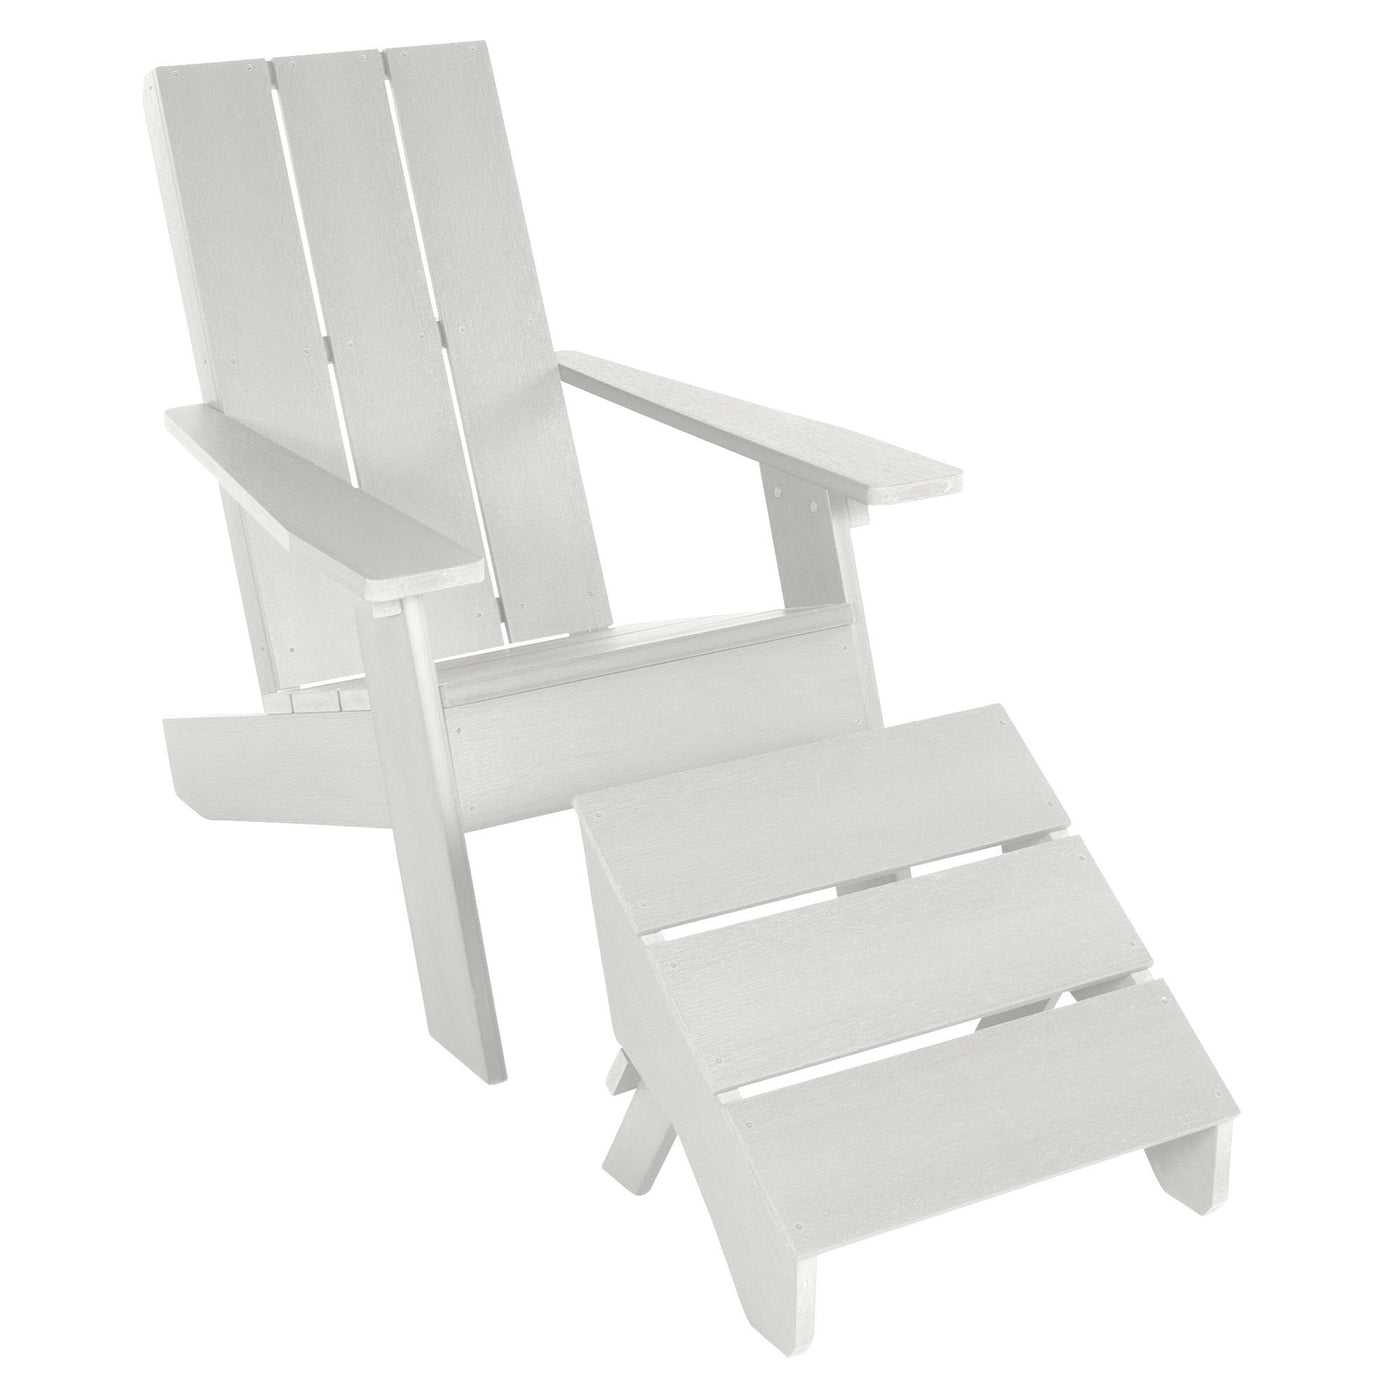 Barcelona Modern Adirondack Chair and Ottoman Highwood USA White 